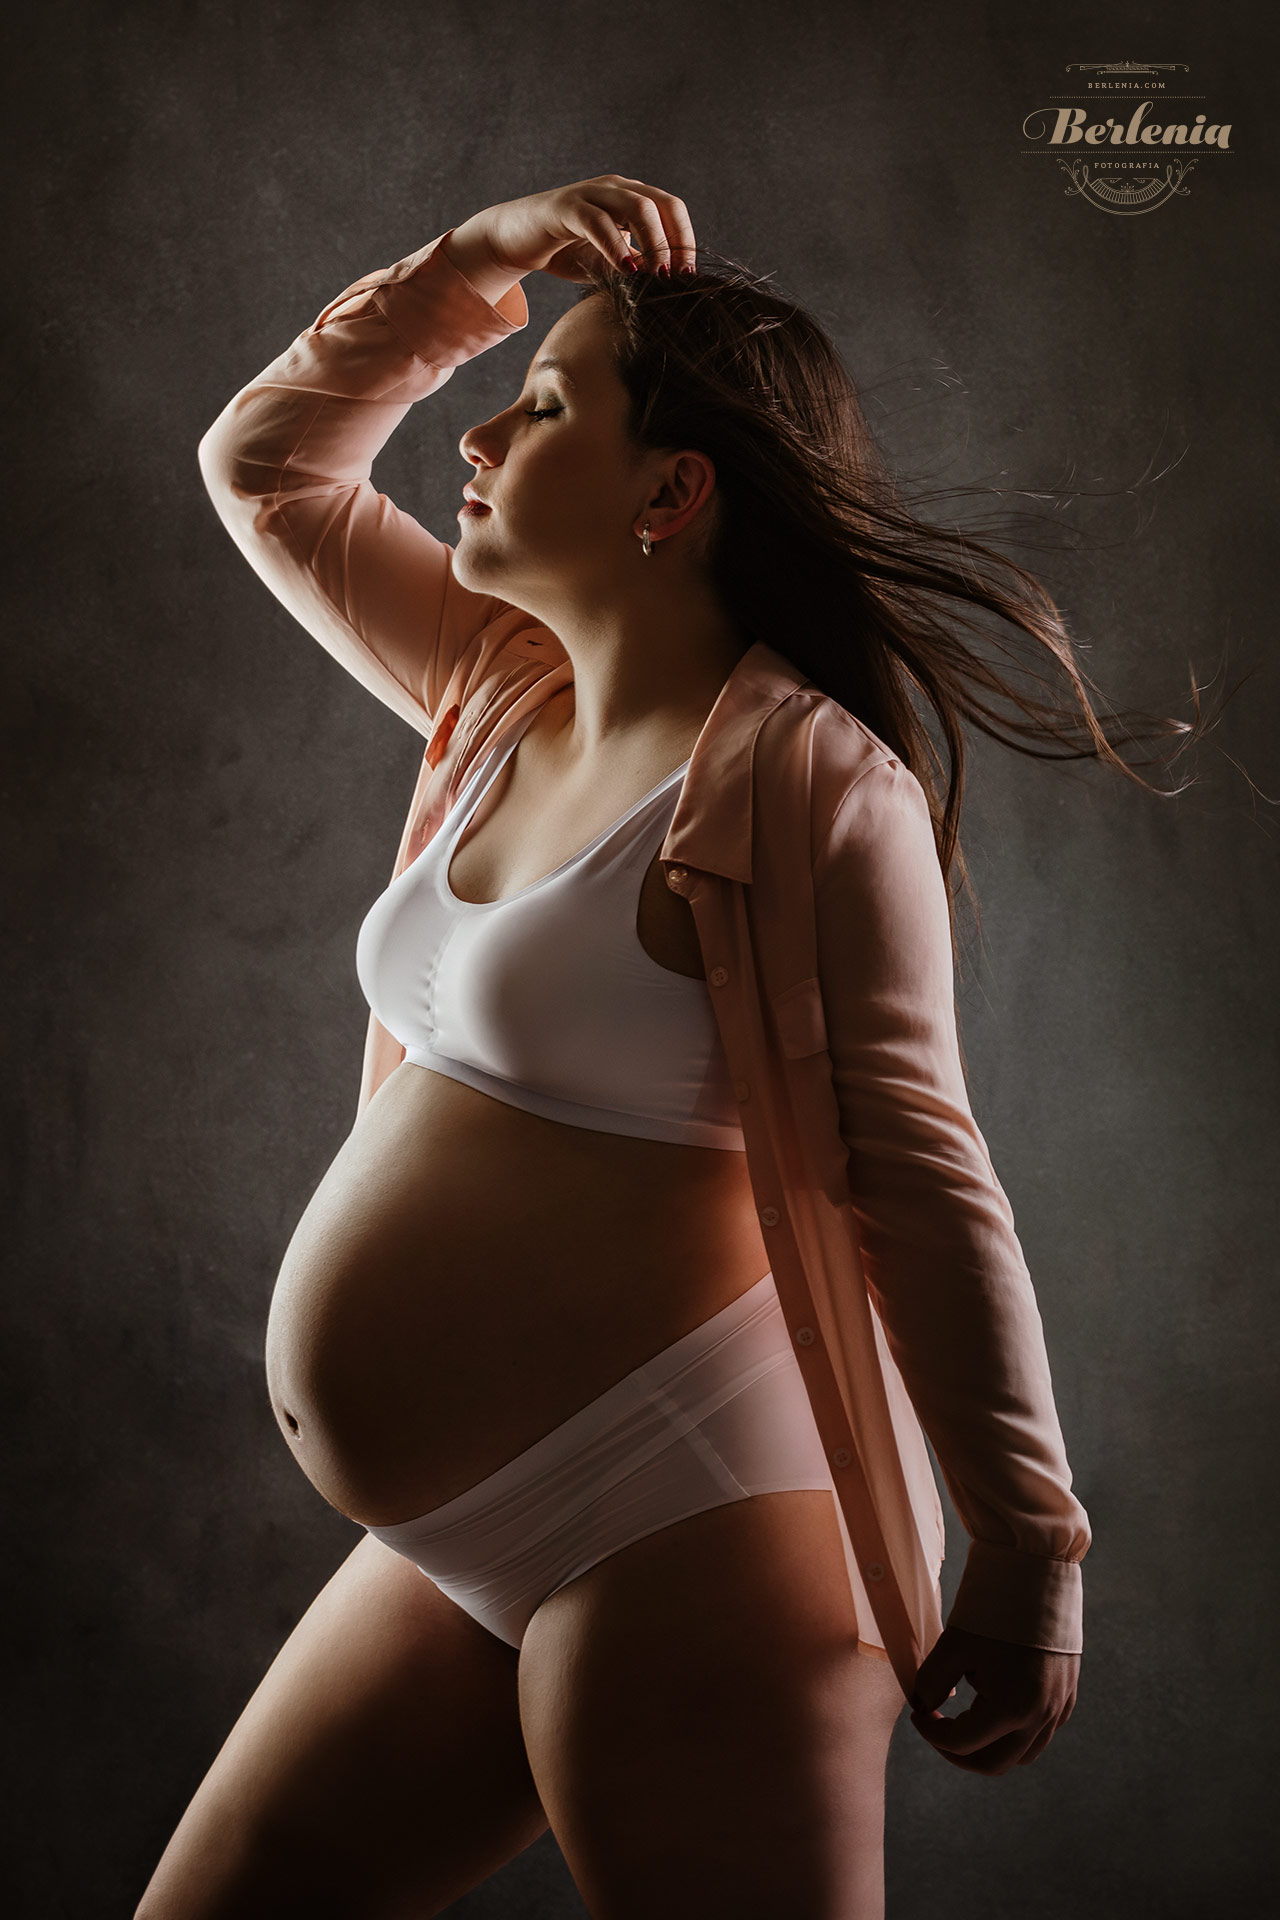 Fotografía de embarazo en estudio con pareja - Sesión de fotos embarazada - Villa Urquiza, CABA, Buenos Aires, Argentina - Berlenia Fotografía - 02